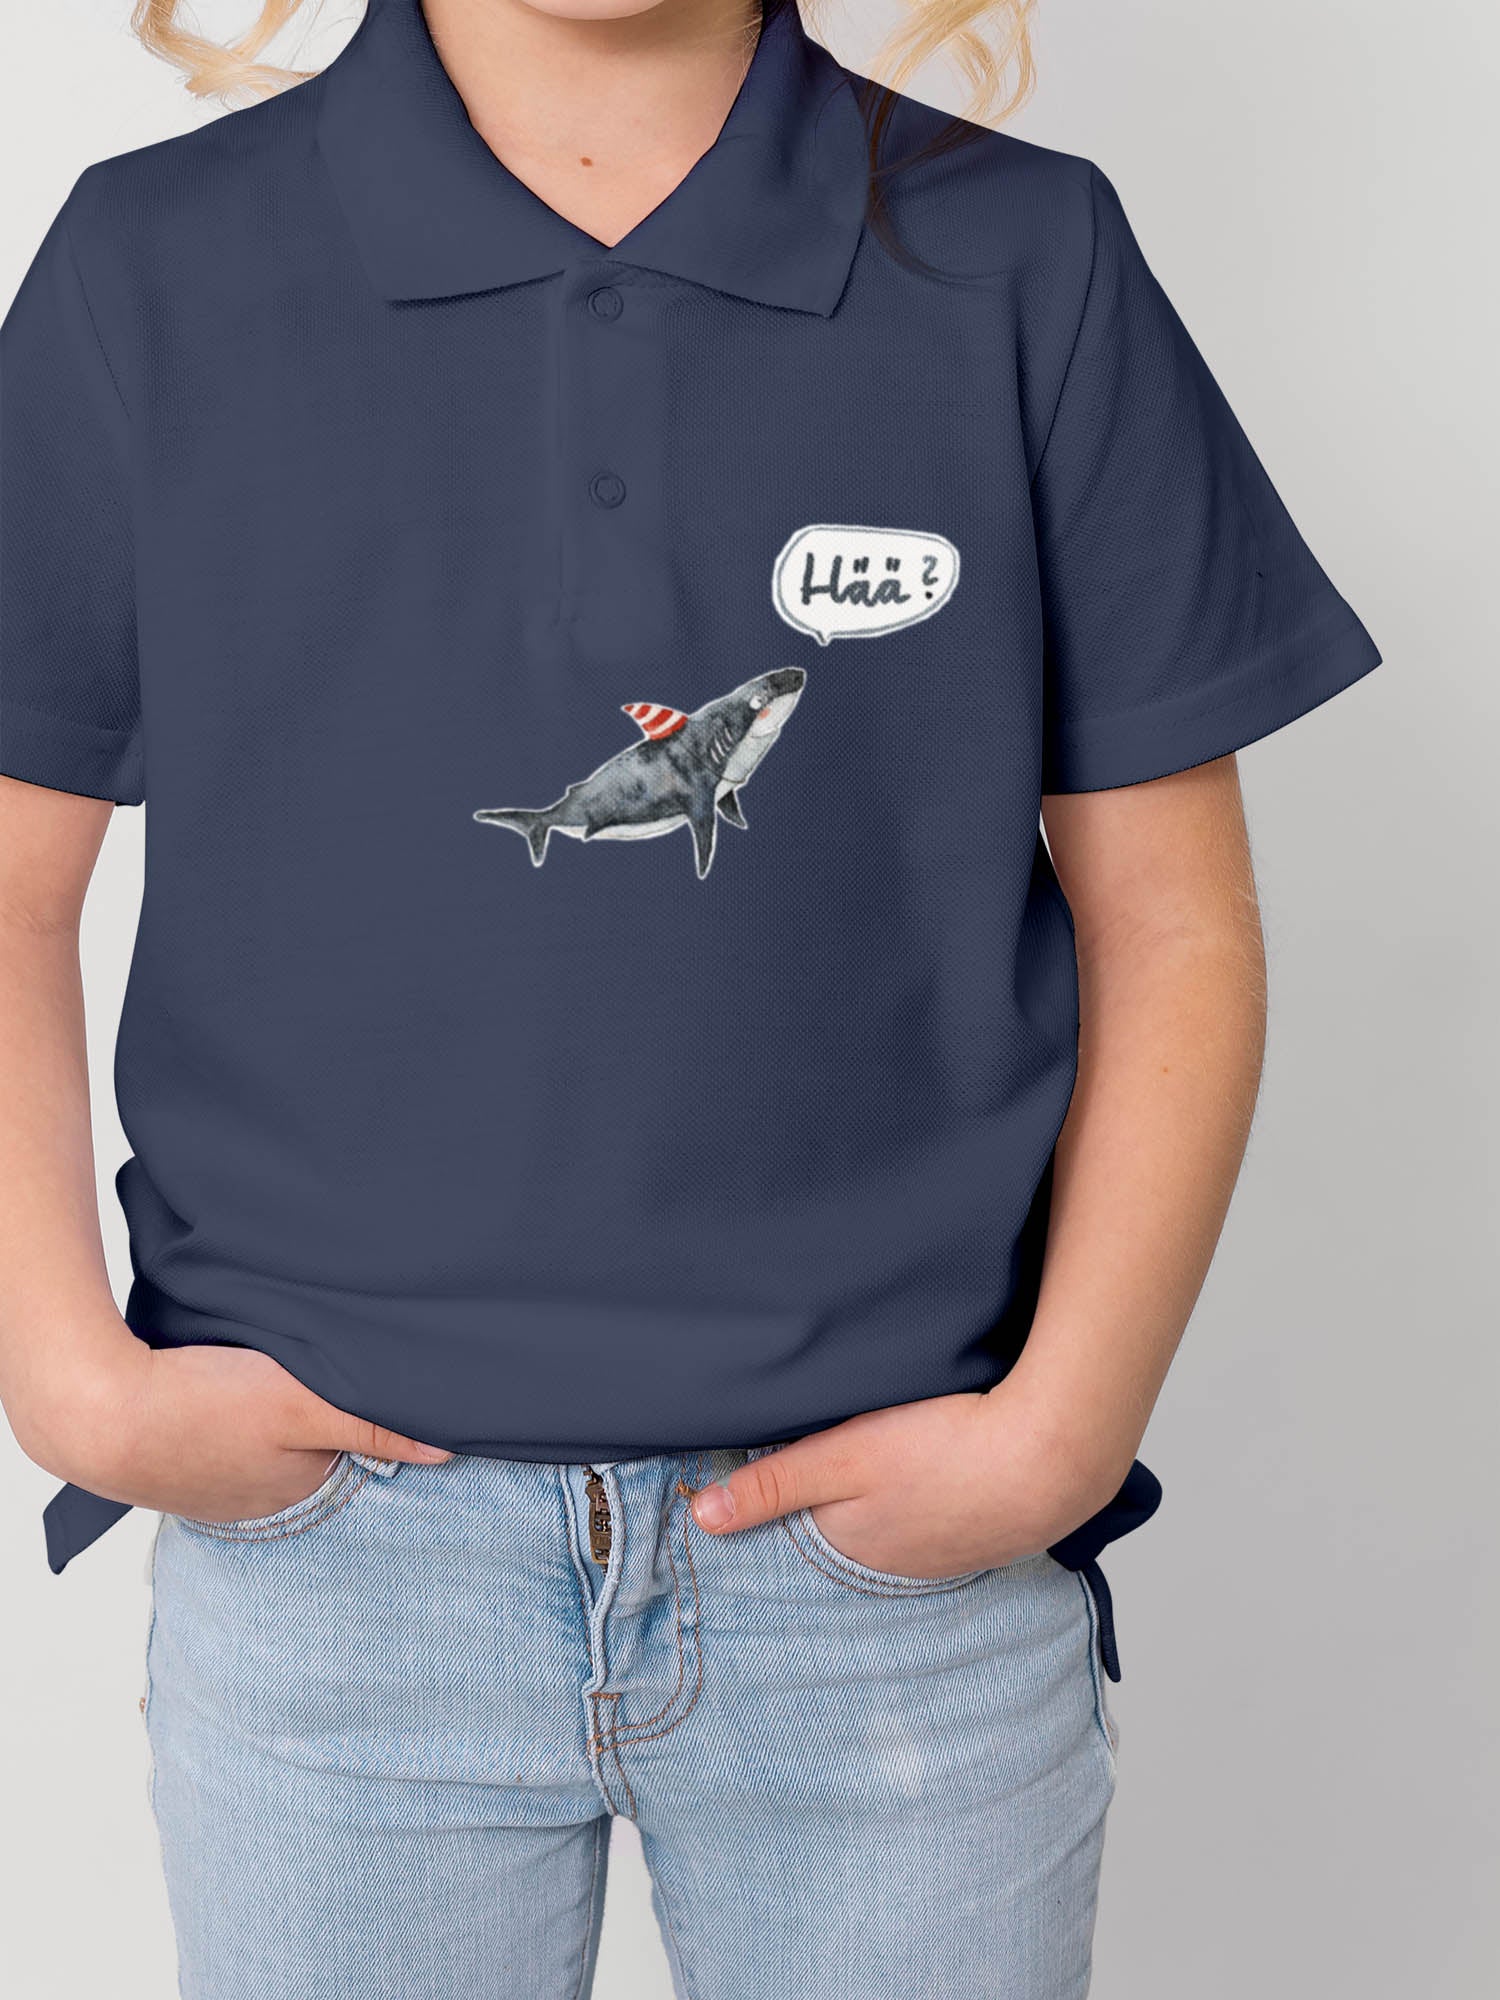 Kind trägt ein polo shirt in blau und darauf ist ein hai und ein Hää bügelbild von halfbird gebügelt